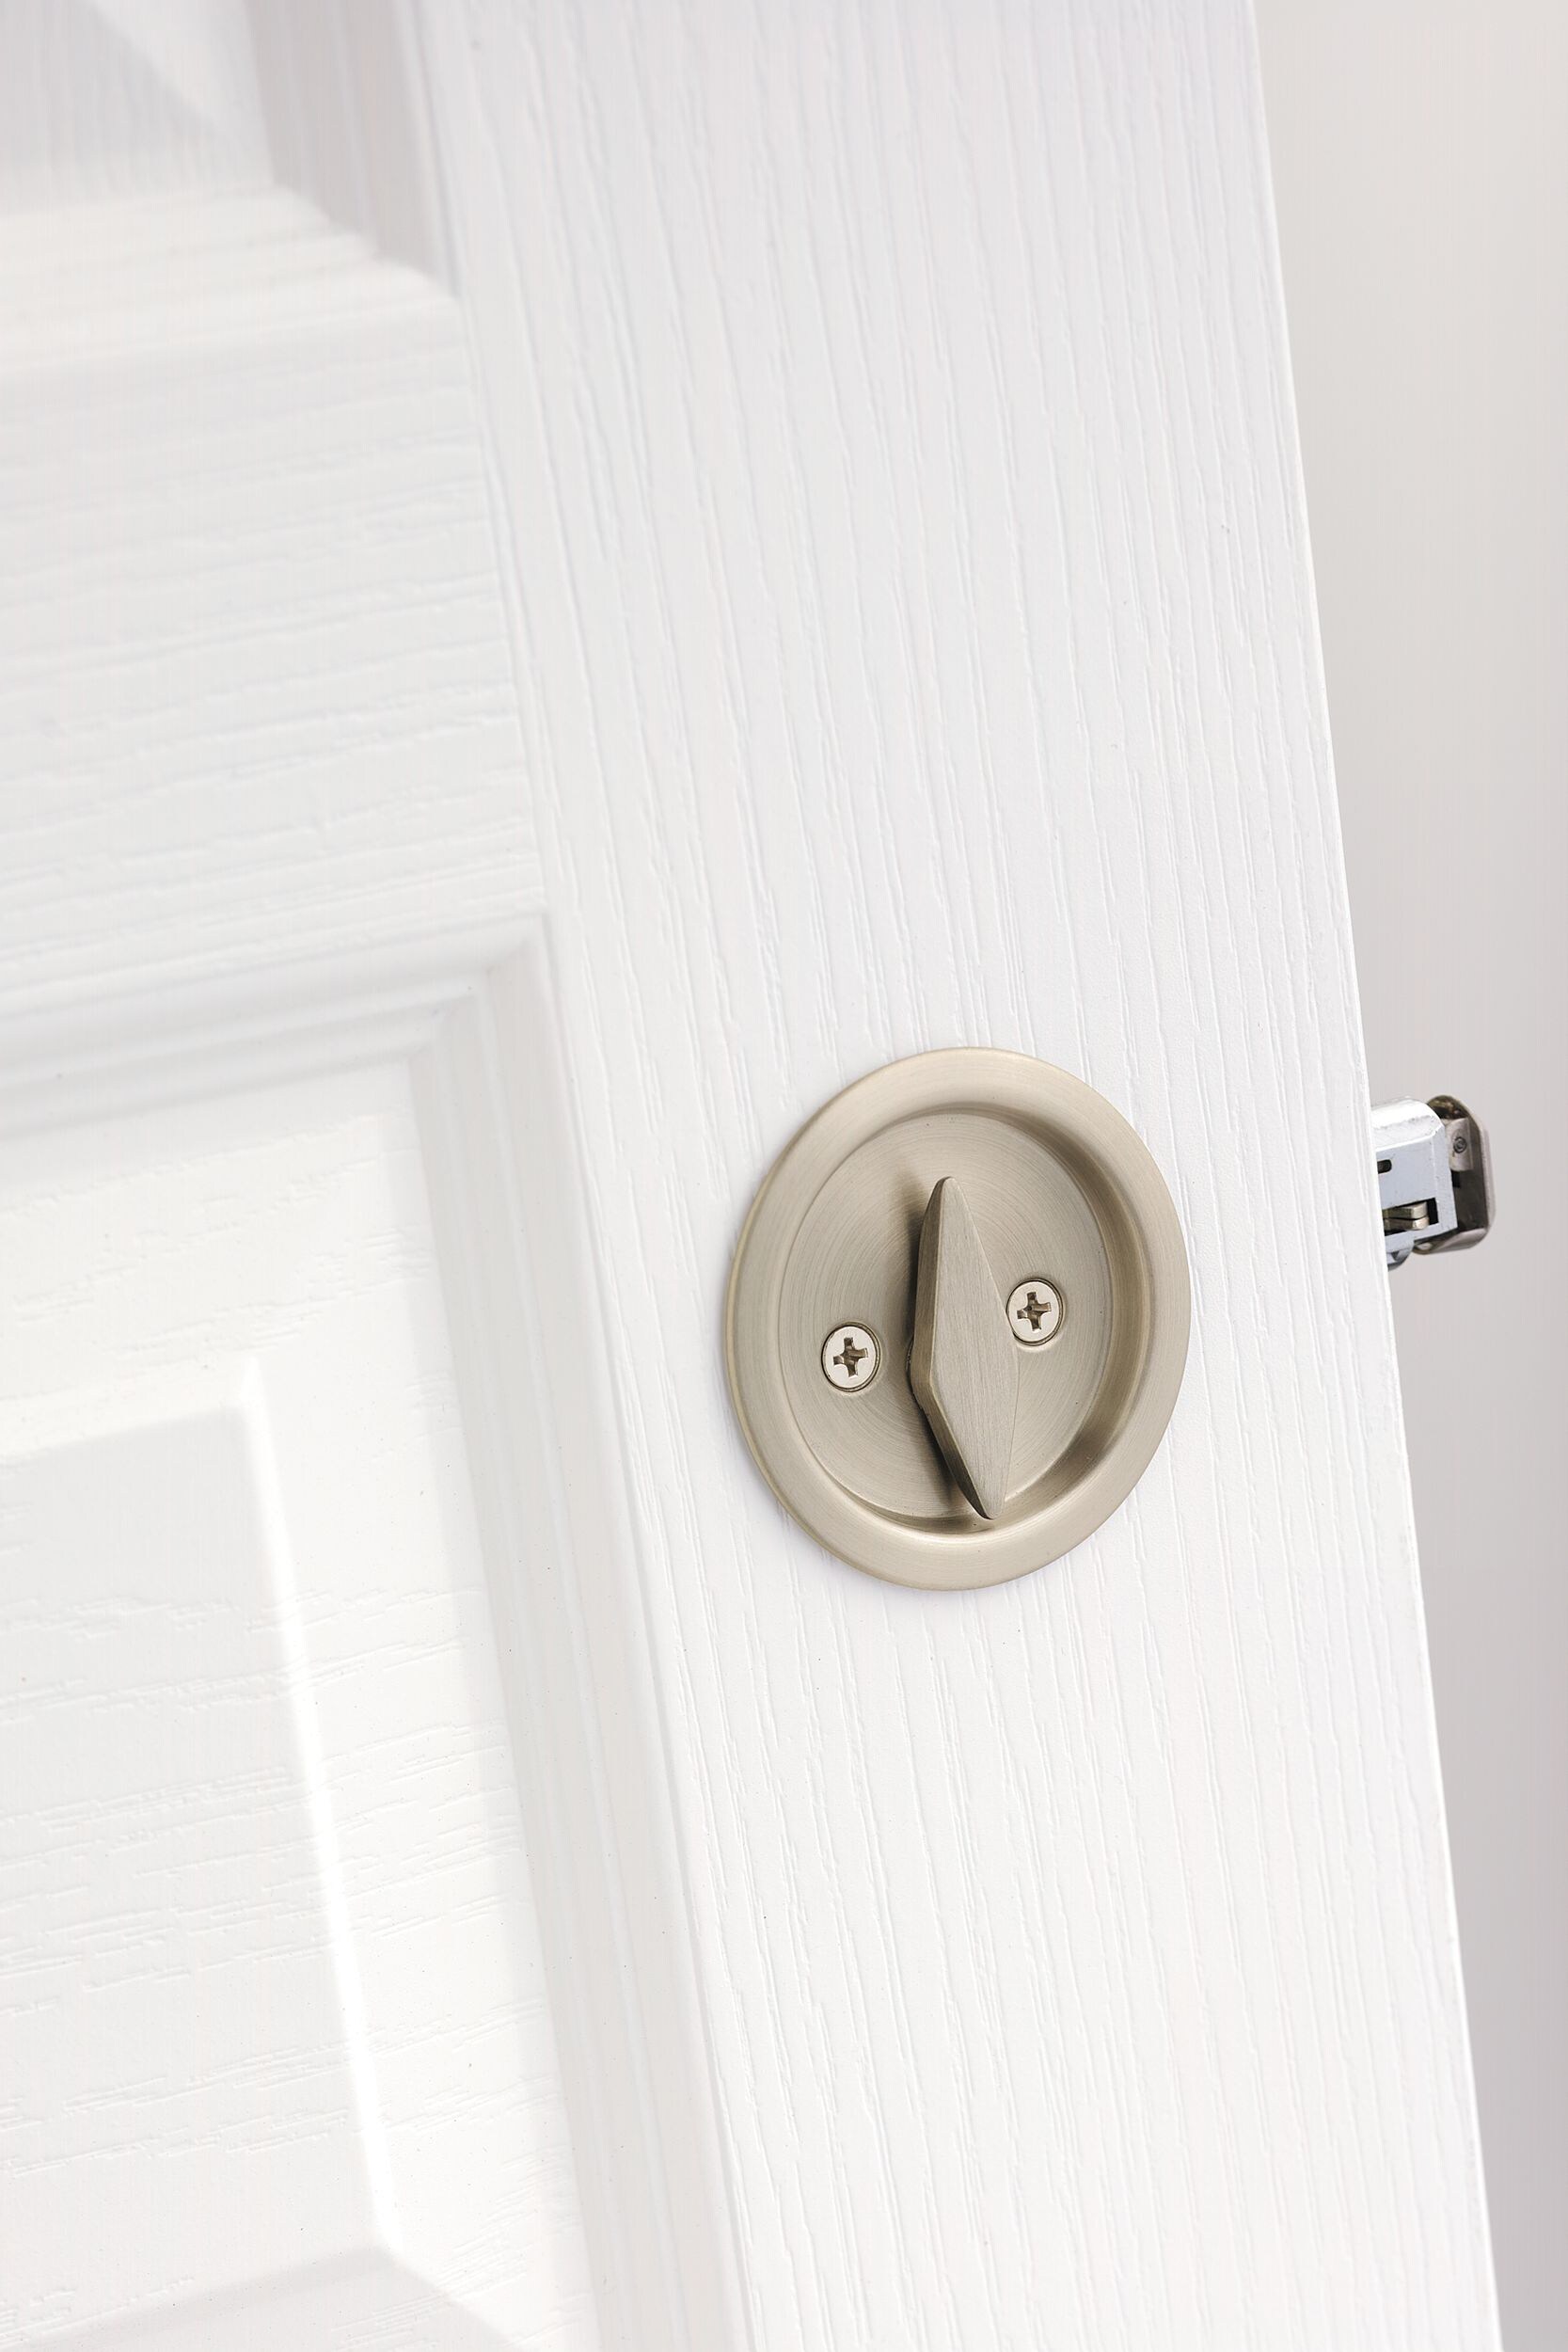 Kwikset 335 15 Round Bed/Bath Privacy Pocket Door Lock in Satin Nickel 